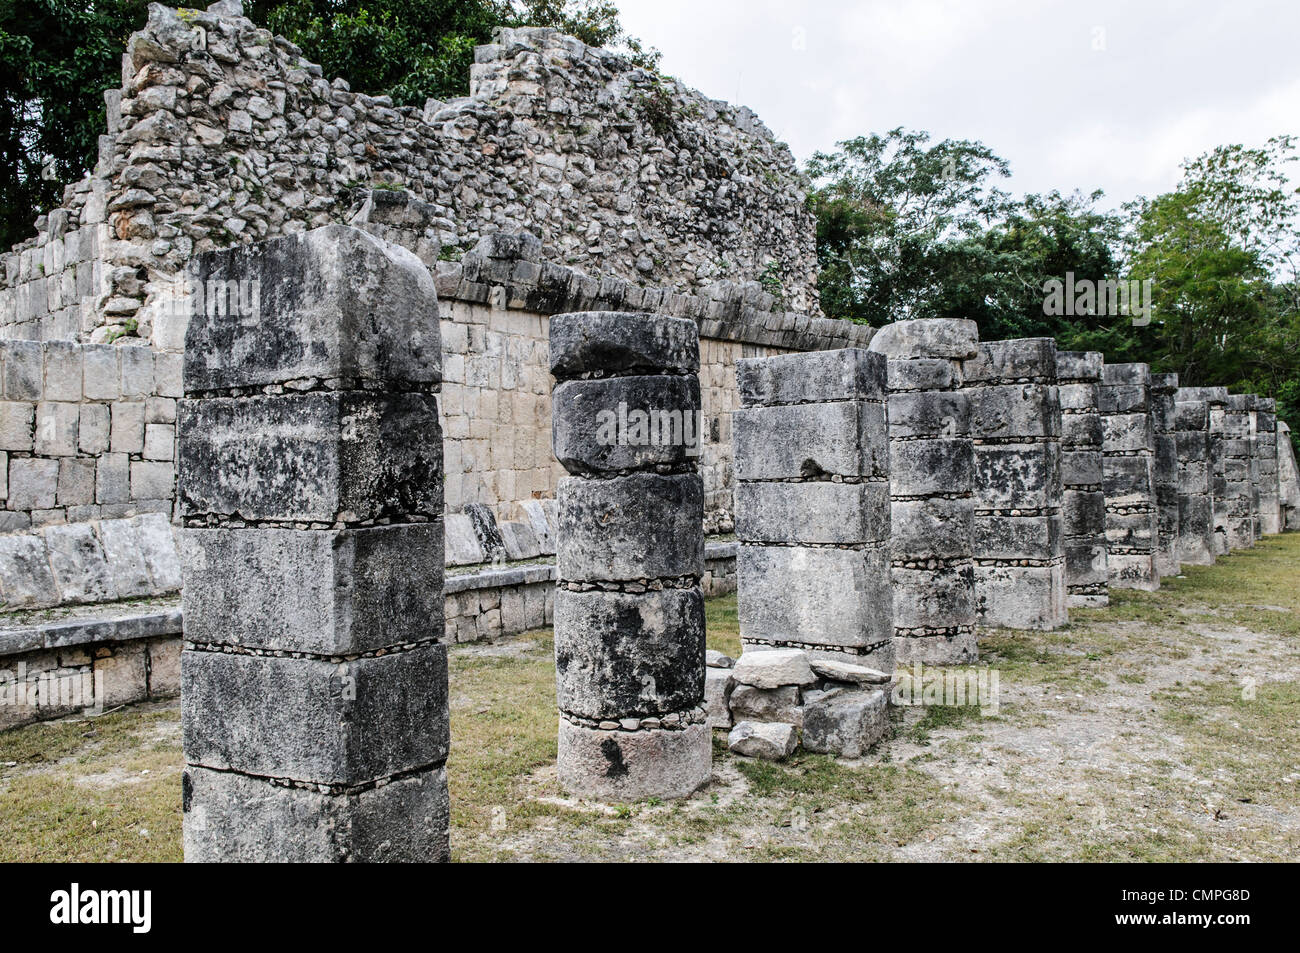 CHICHEN ITZA, Mexique - lignes et de murs de vestiges de pierre sur la place des Mille Colonnes à Chichen Itza ruines Maya zone archéologique au cœur de la péninsule du Yucatan. Banque D'Images